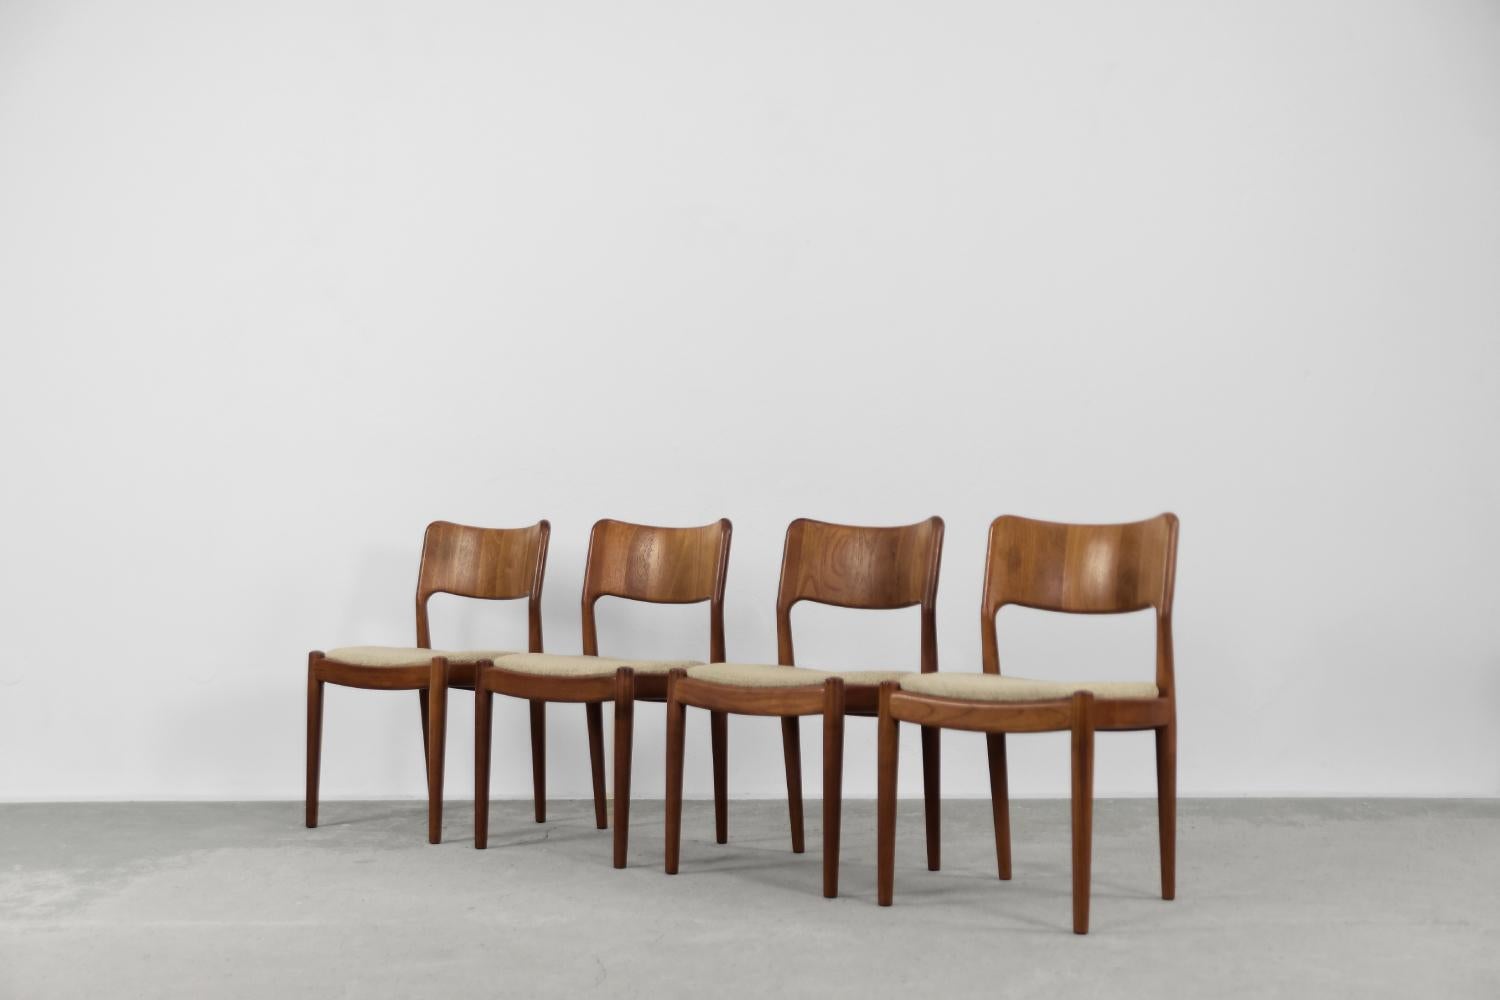 Cet ensemble de quatre chaises modernistes a été fabriqué par le fabricant danois Glostrup Møbelfabrik dans les années 1960. Ils sont fabriqués en teck massif dans une chaude nuance de brun. L'assise est garnie d'un tissu en laine de haute qualité,